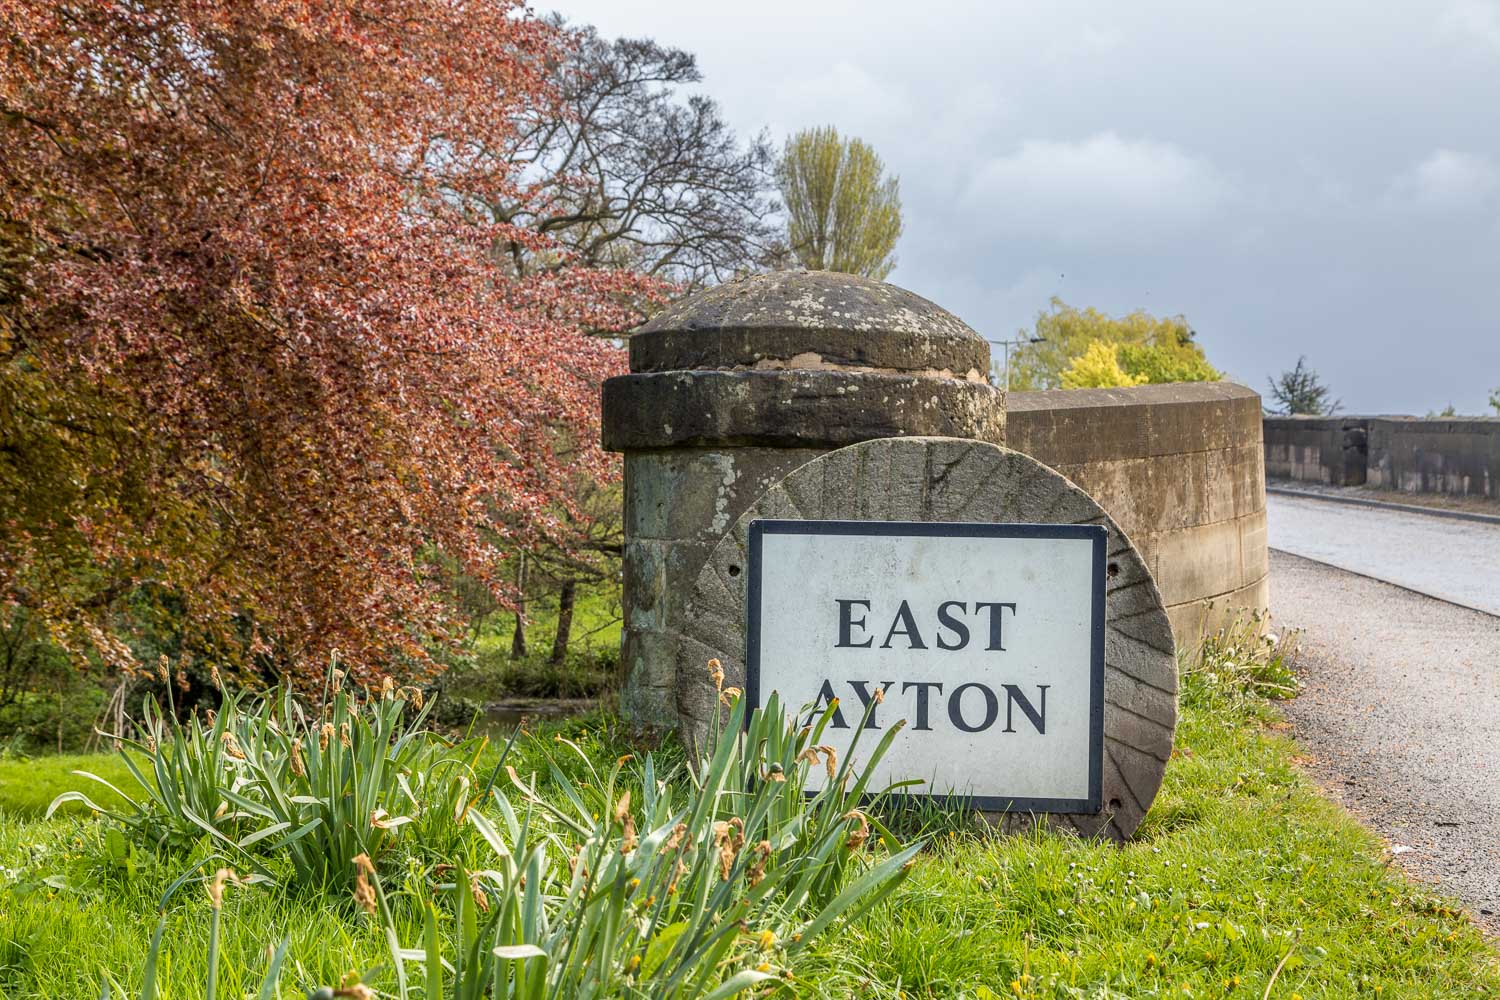 East Ayton